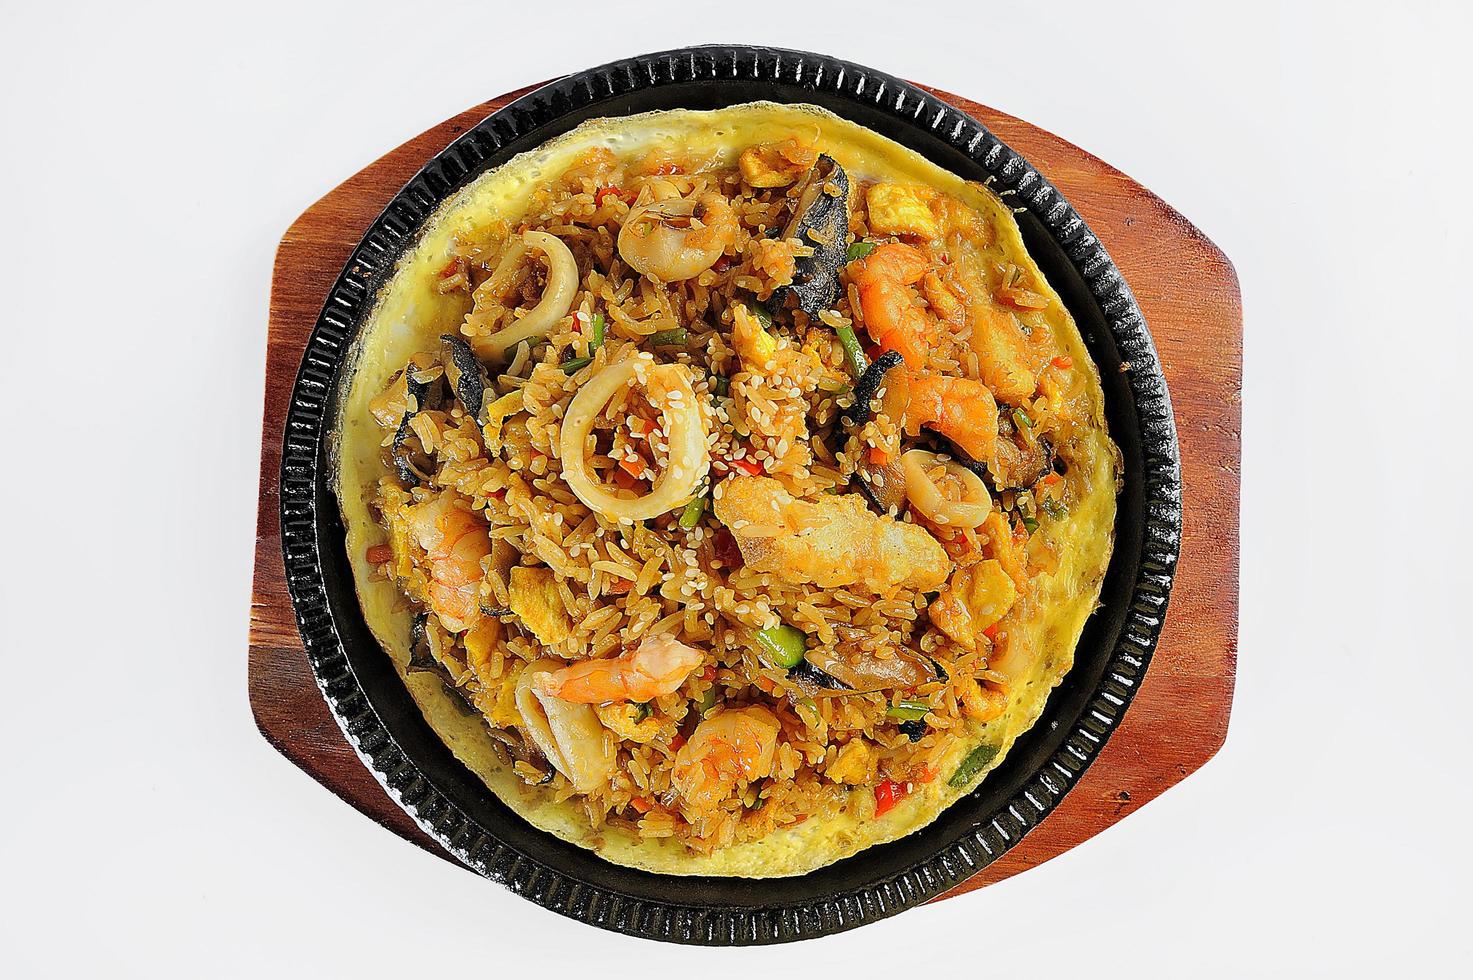 comida peruana marisco e arroz, chamado arroz con mariscos foto